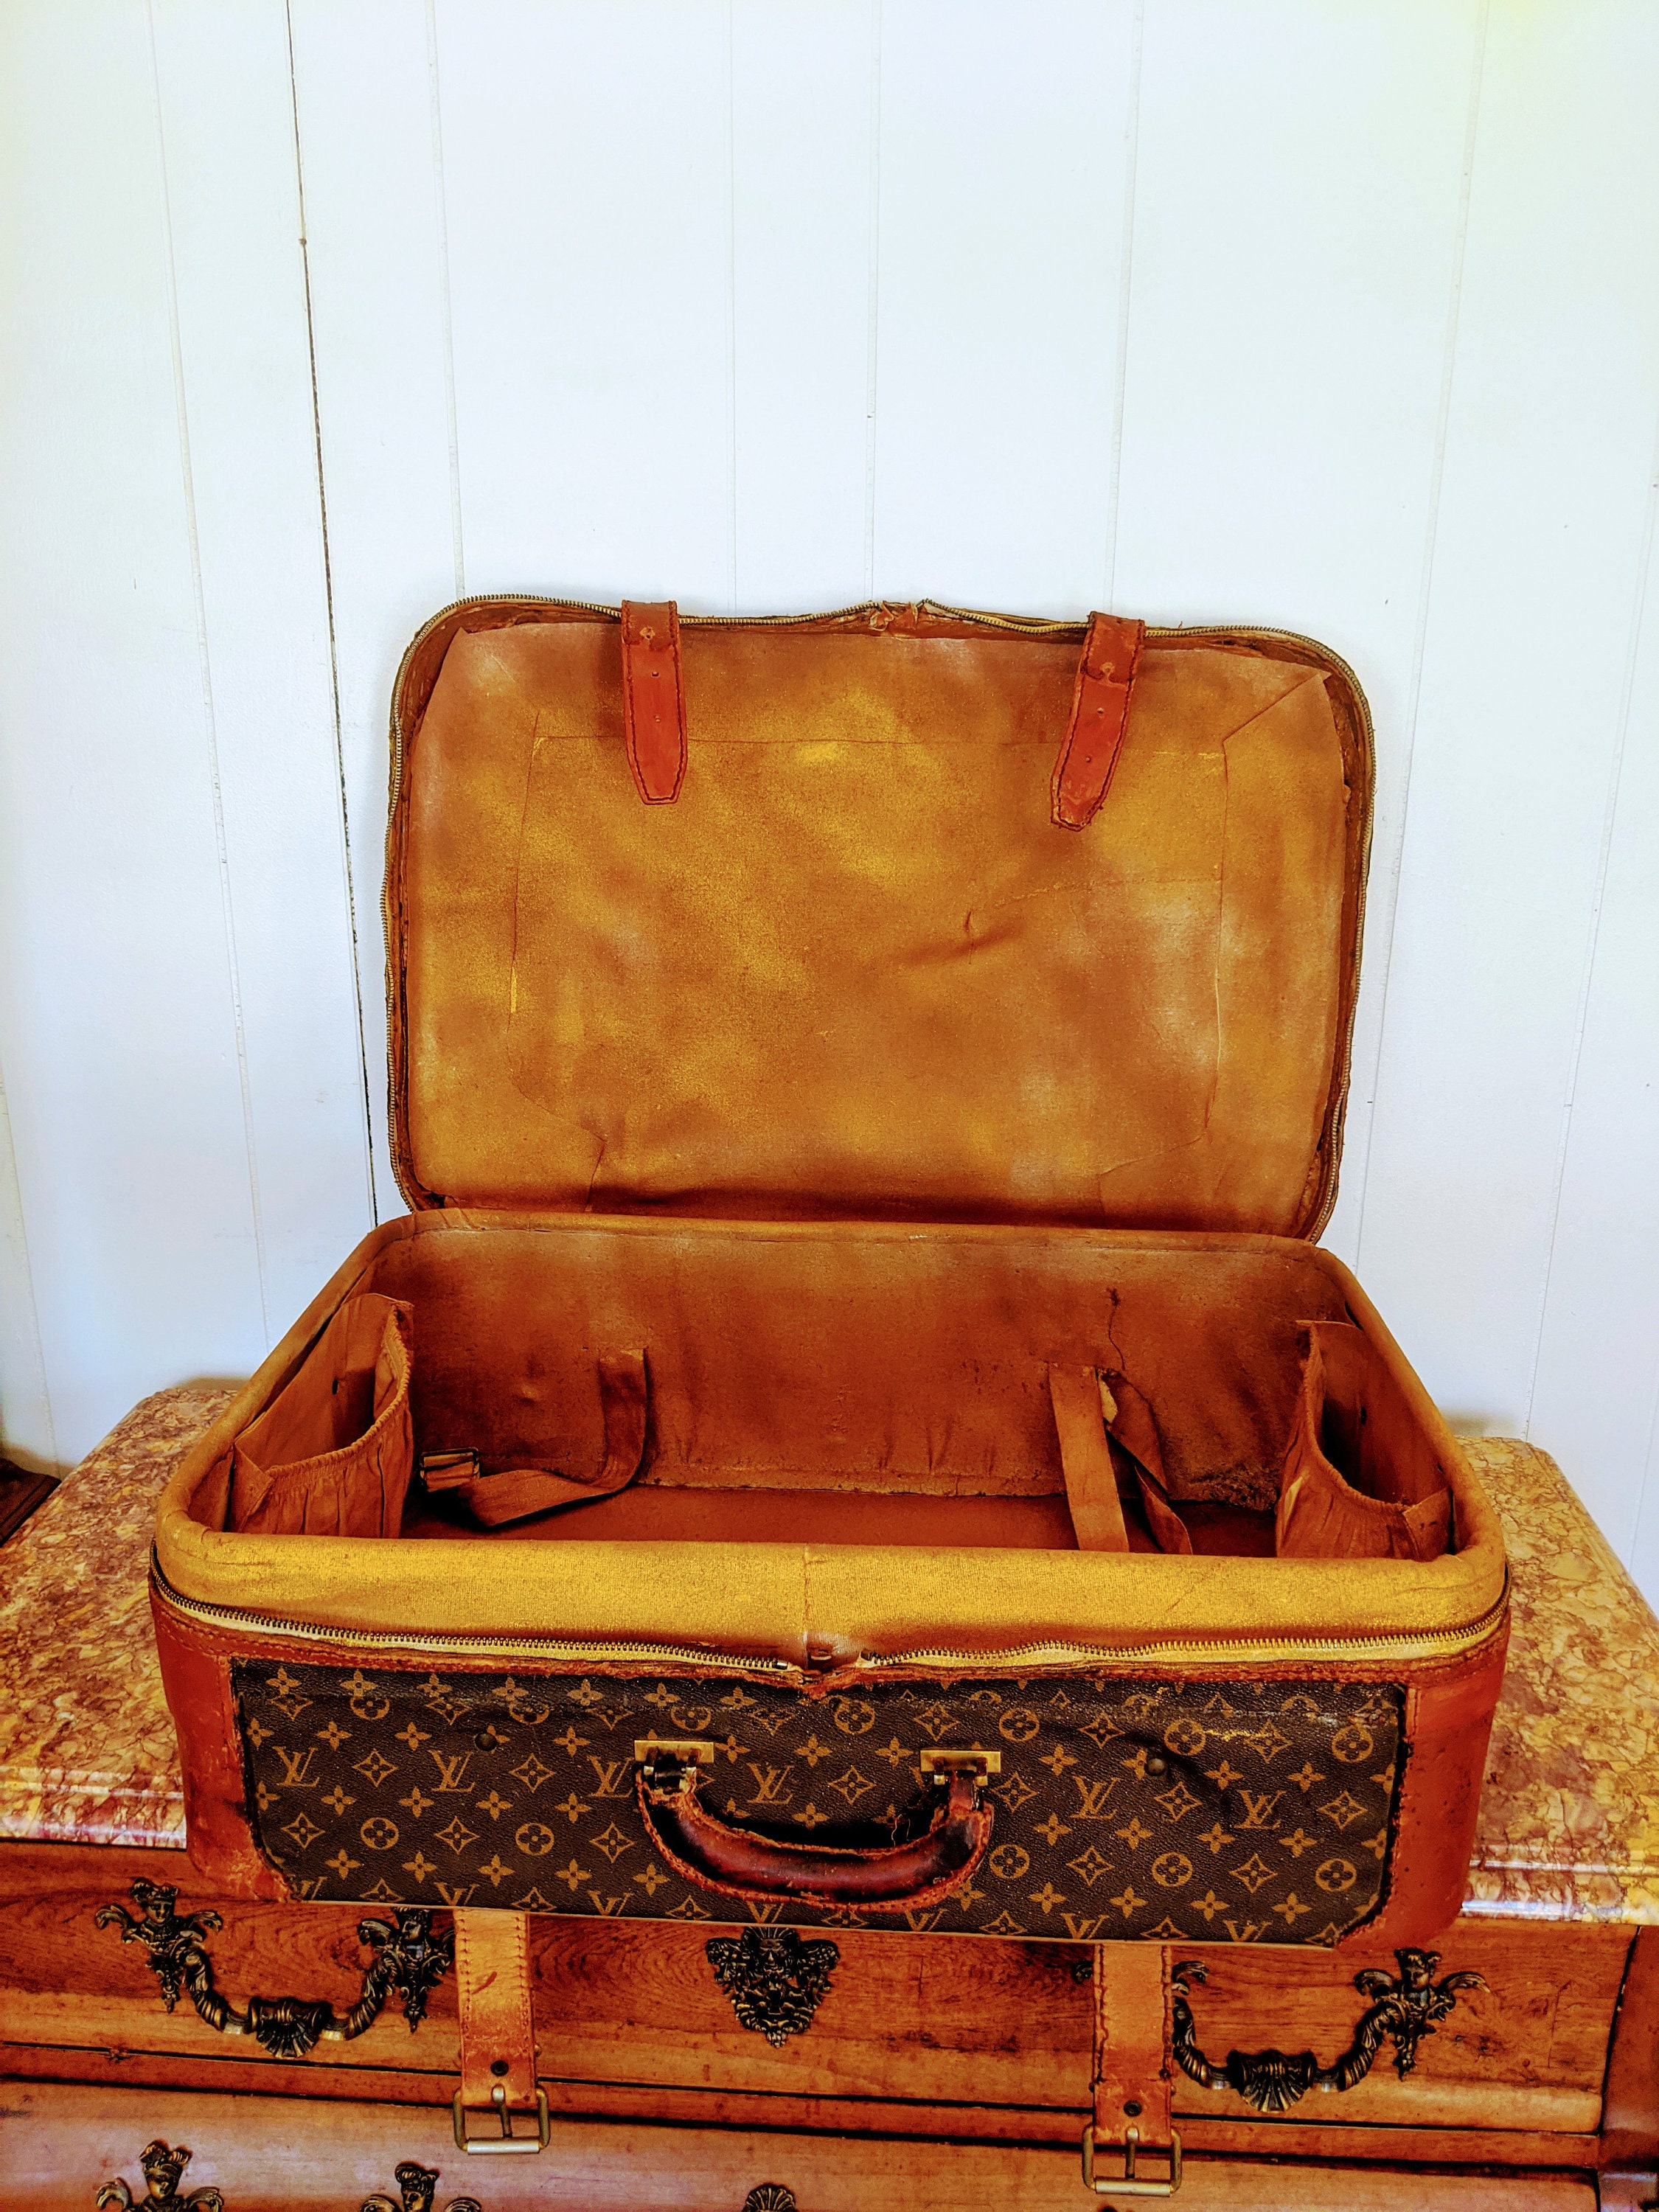 Louis Vuitton pair of Luggage & travel bag 1930s LA BAIE des ANGES